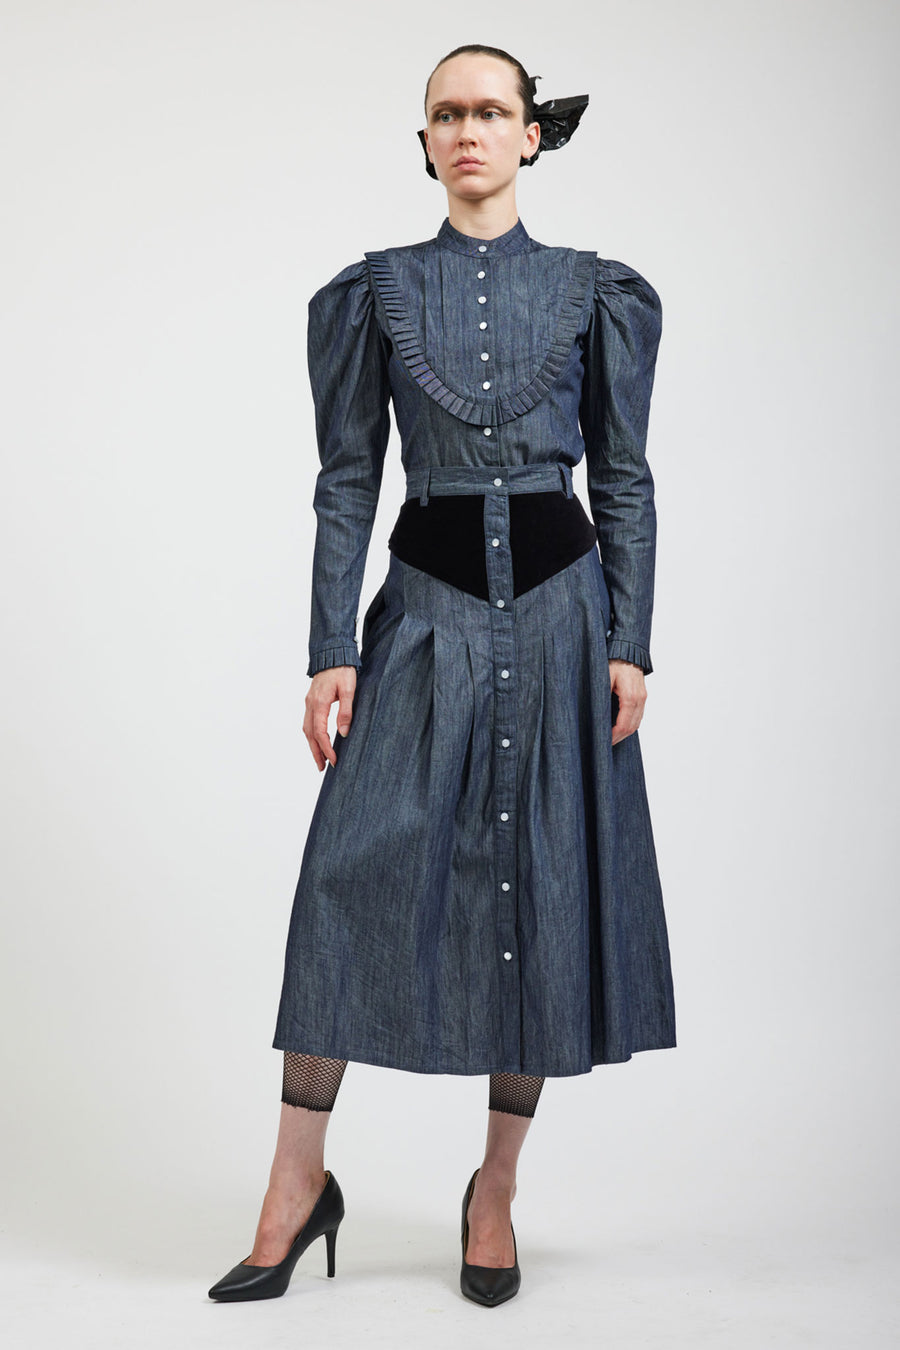 BATSHEVA - Denim Skirt with Black Velvet